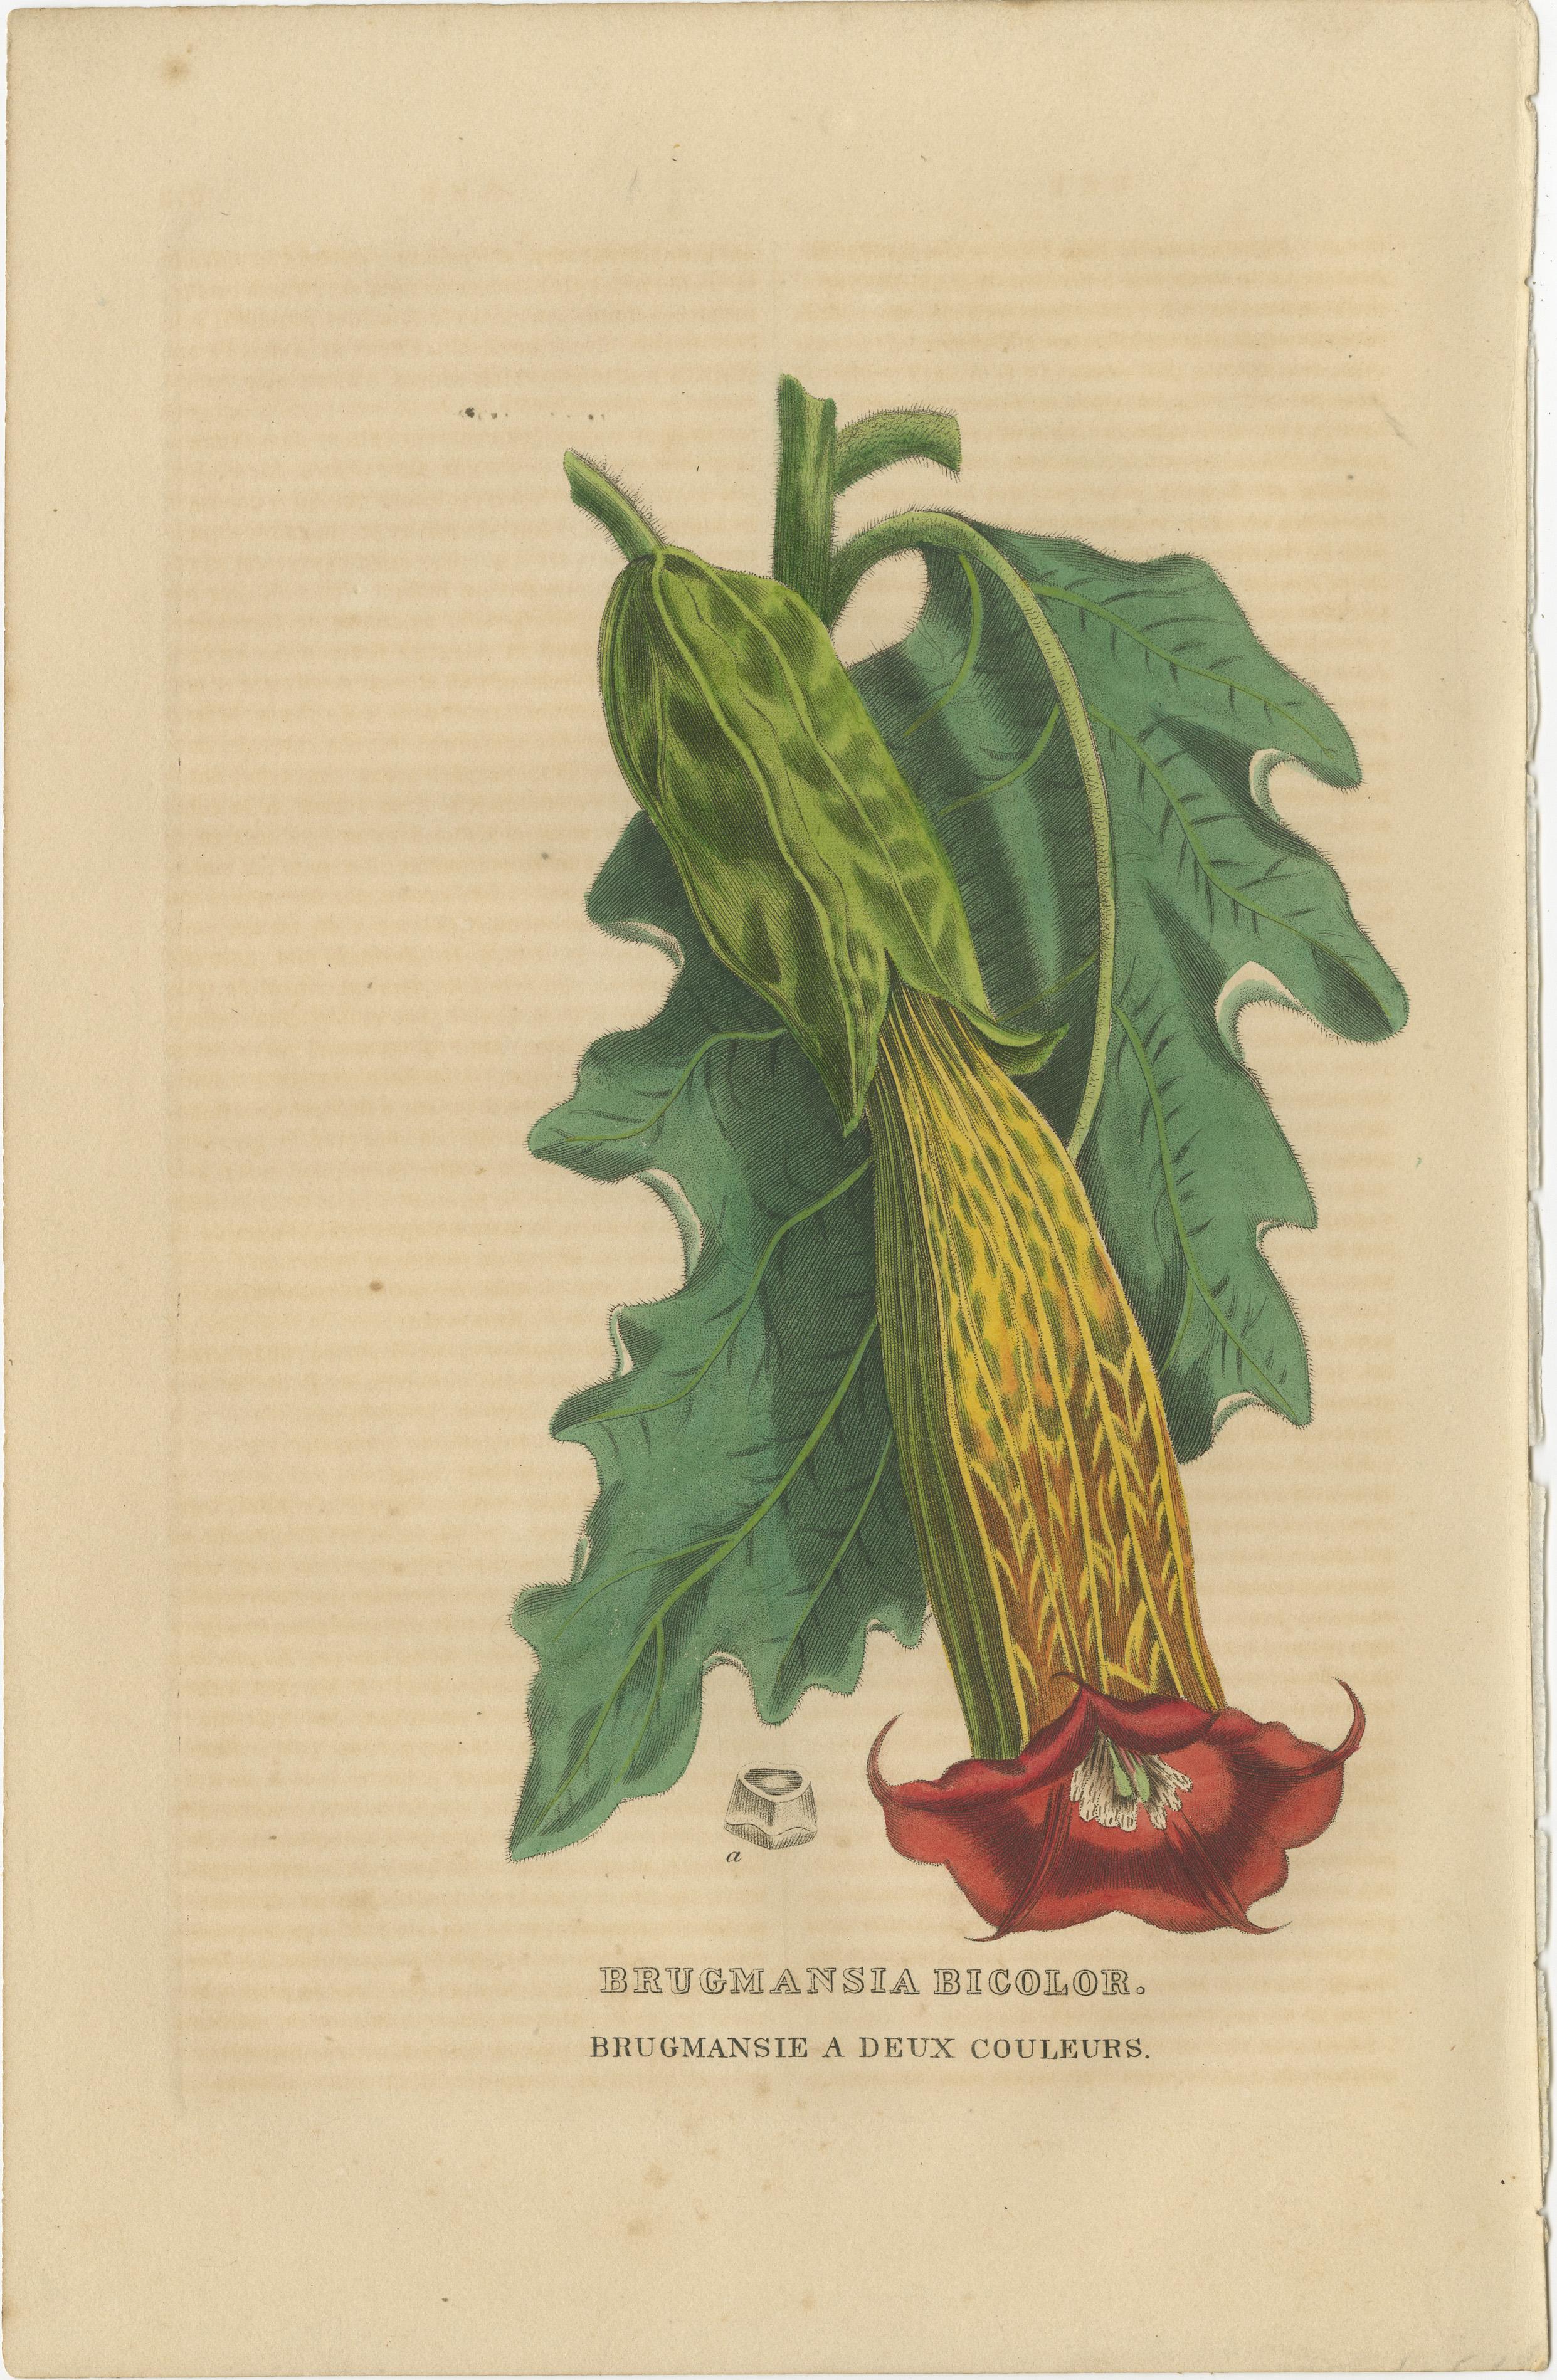 Dieses Bild ist eine wunderschöne Collage antiker handkolorierter botanischer Stiche aus dem Jahr 1845, die jeweils eine andere Pflanzenart mit außergewöhnlichen Details und leuchtenden Farben zeigen. Die Gravuren stellen die folgenden Pflanzen